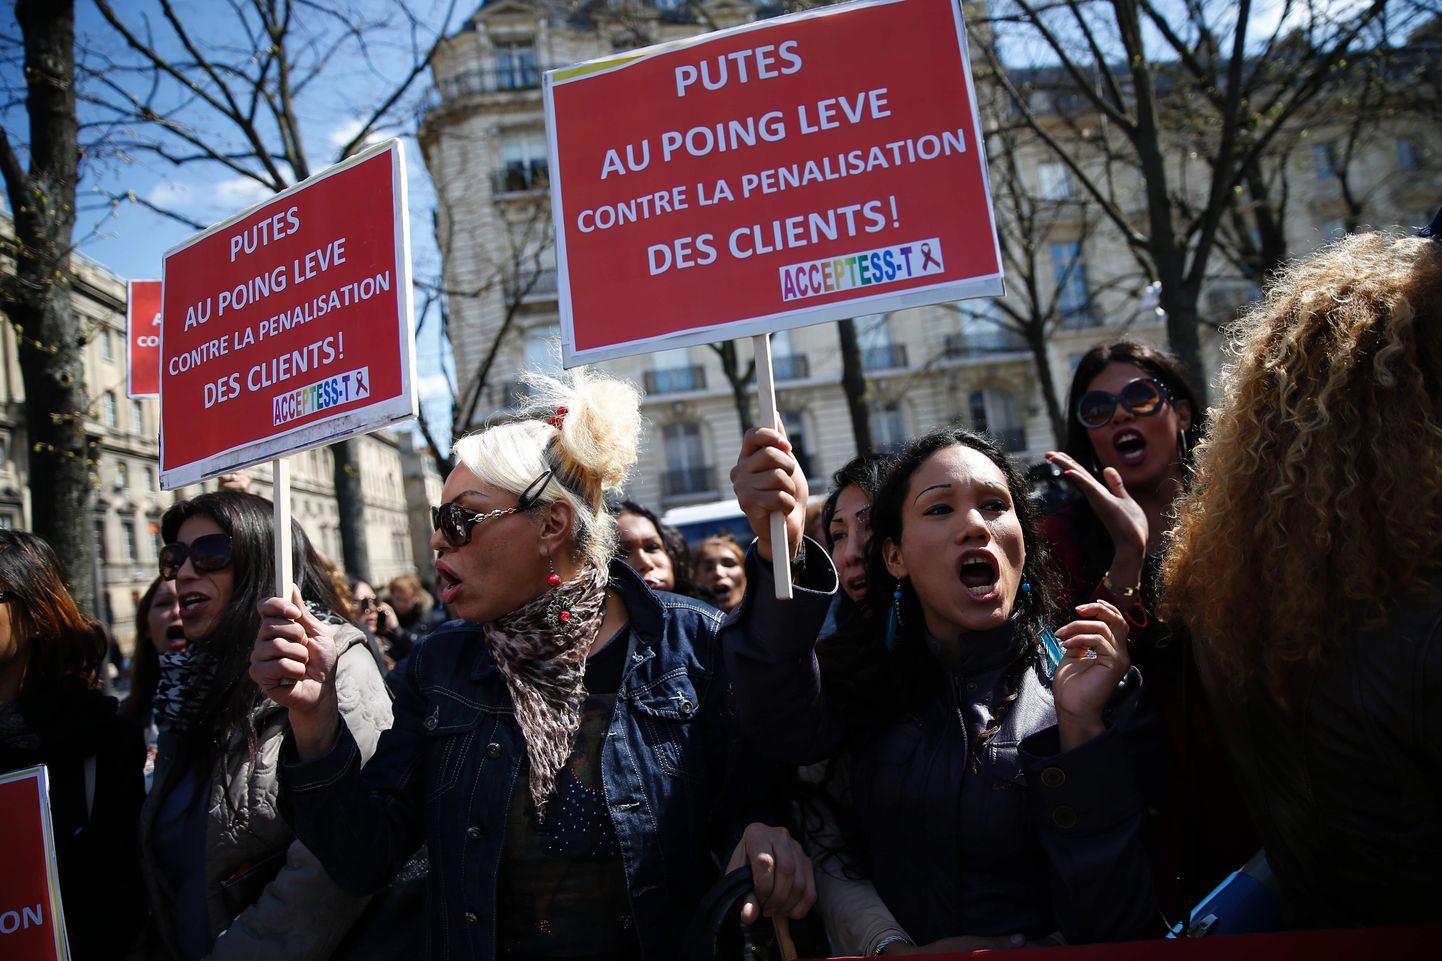 Prantsuse sekstöötajate meeleavaldus eile Pariisis. Prostituudid ja nende toetajad kogunesid, et öelda välja oma seisukoht - prostituudid uut seadust ei poolda.